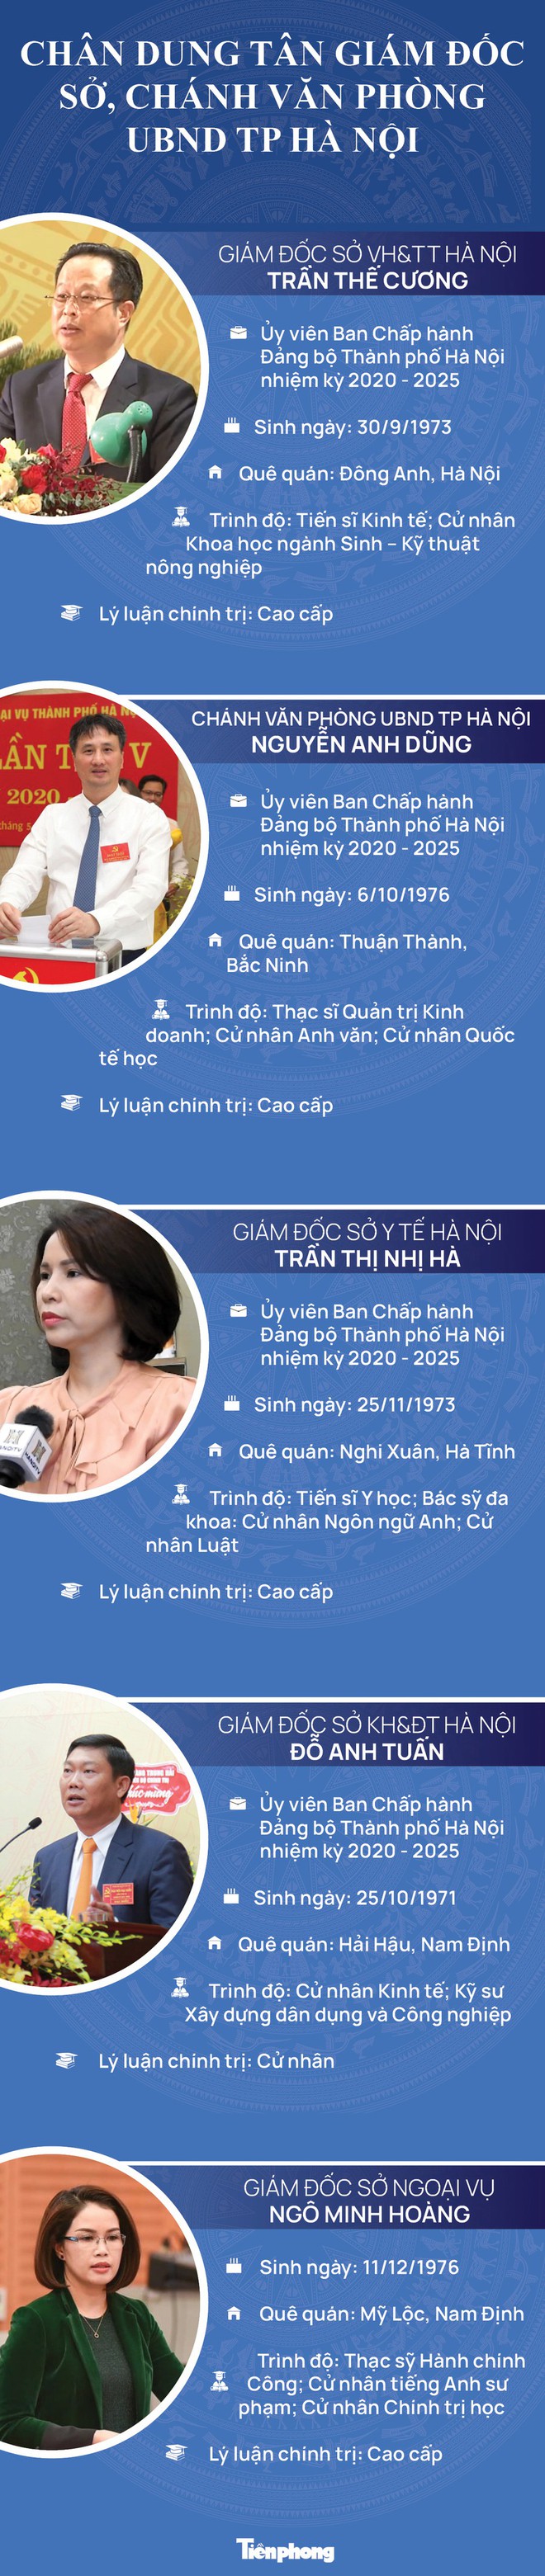 Chân dung tân Giám đốc Sở, Chánh văn phòng UBND TP Hà Nội - Ảnh 1.